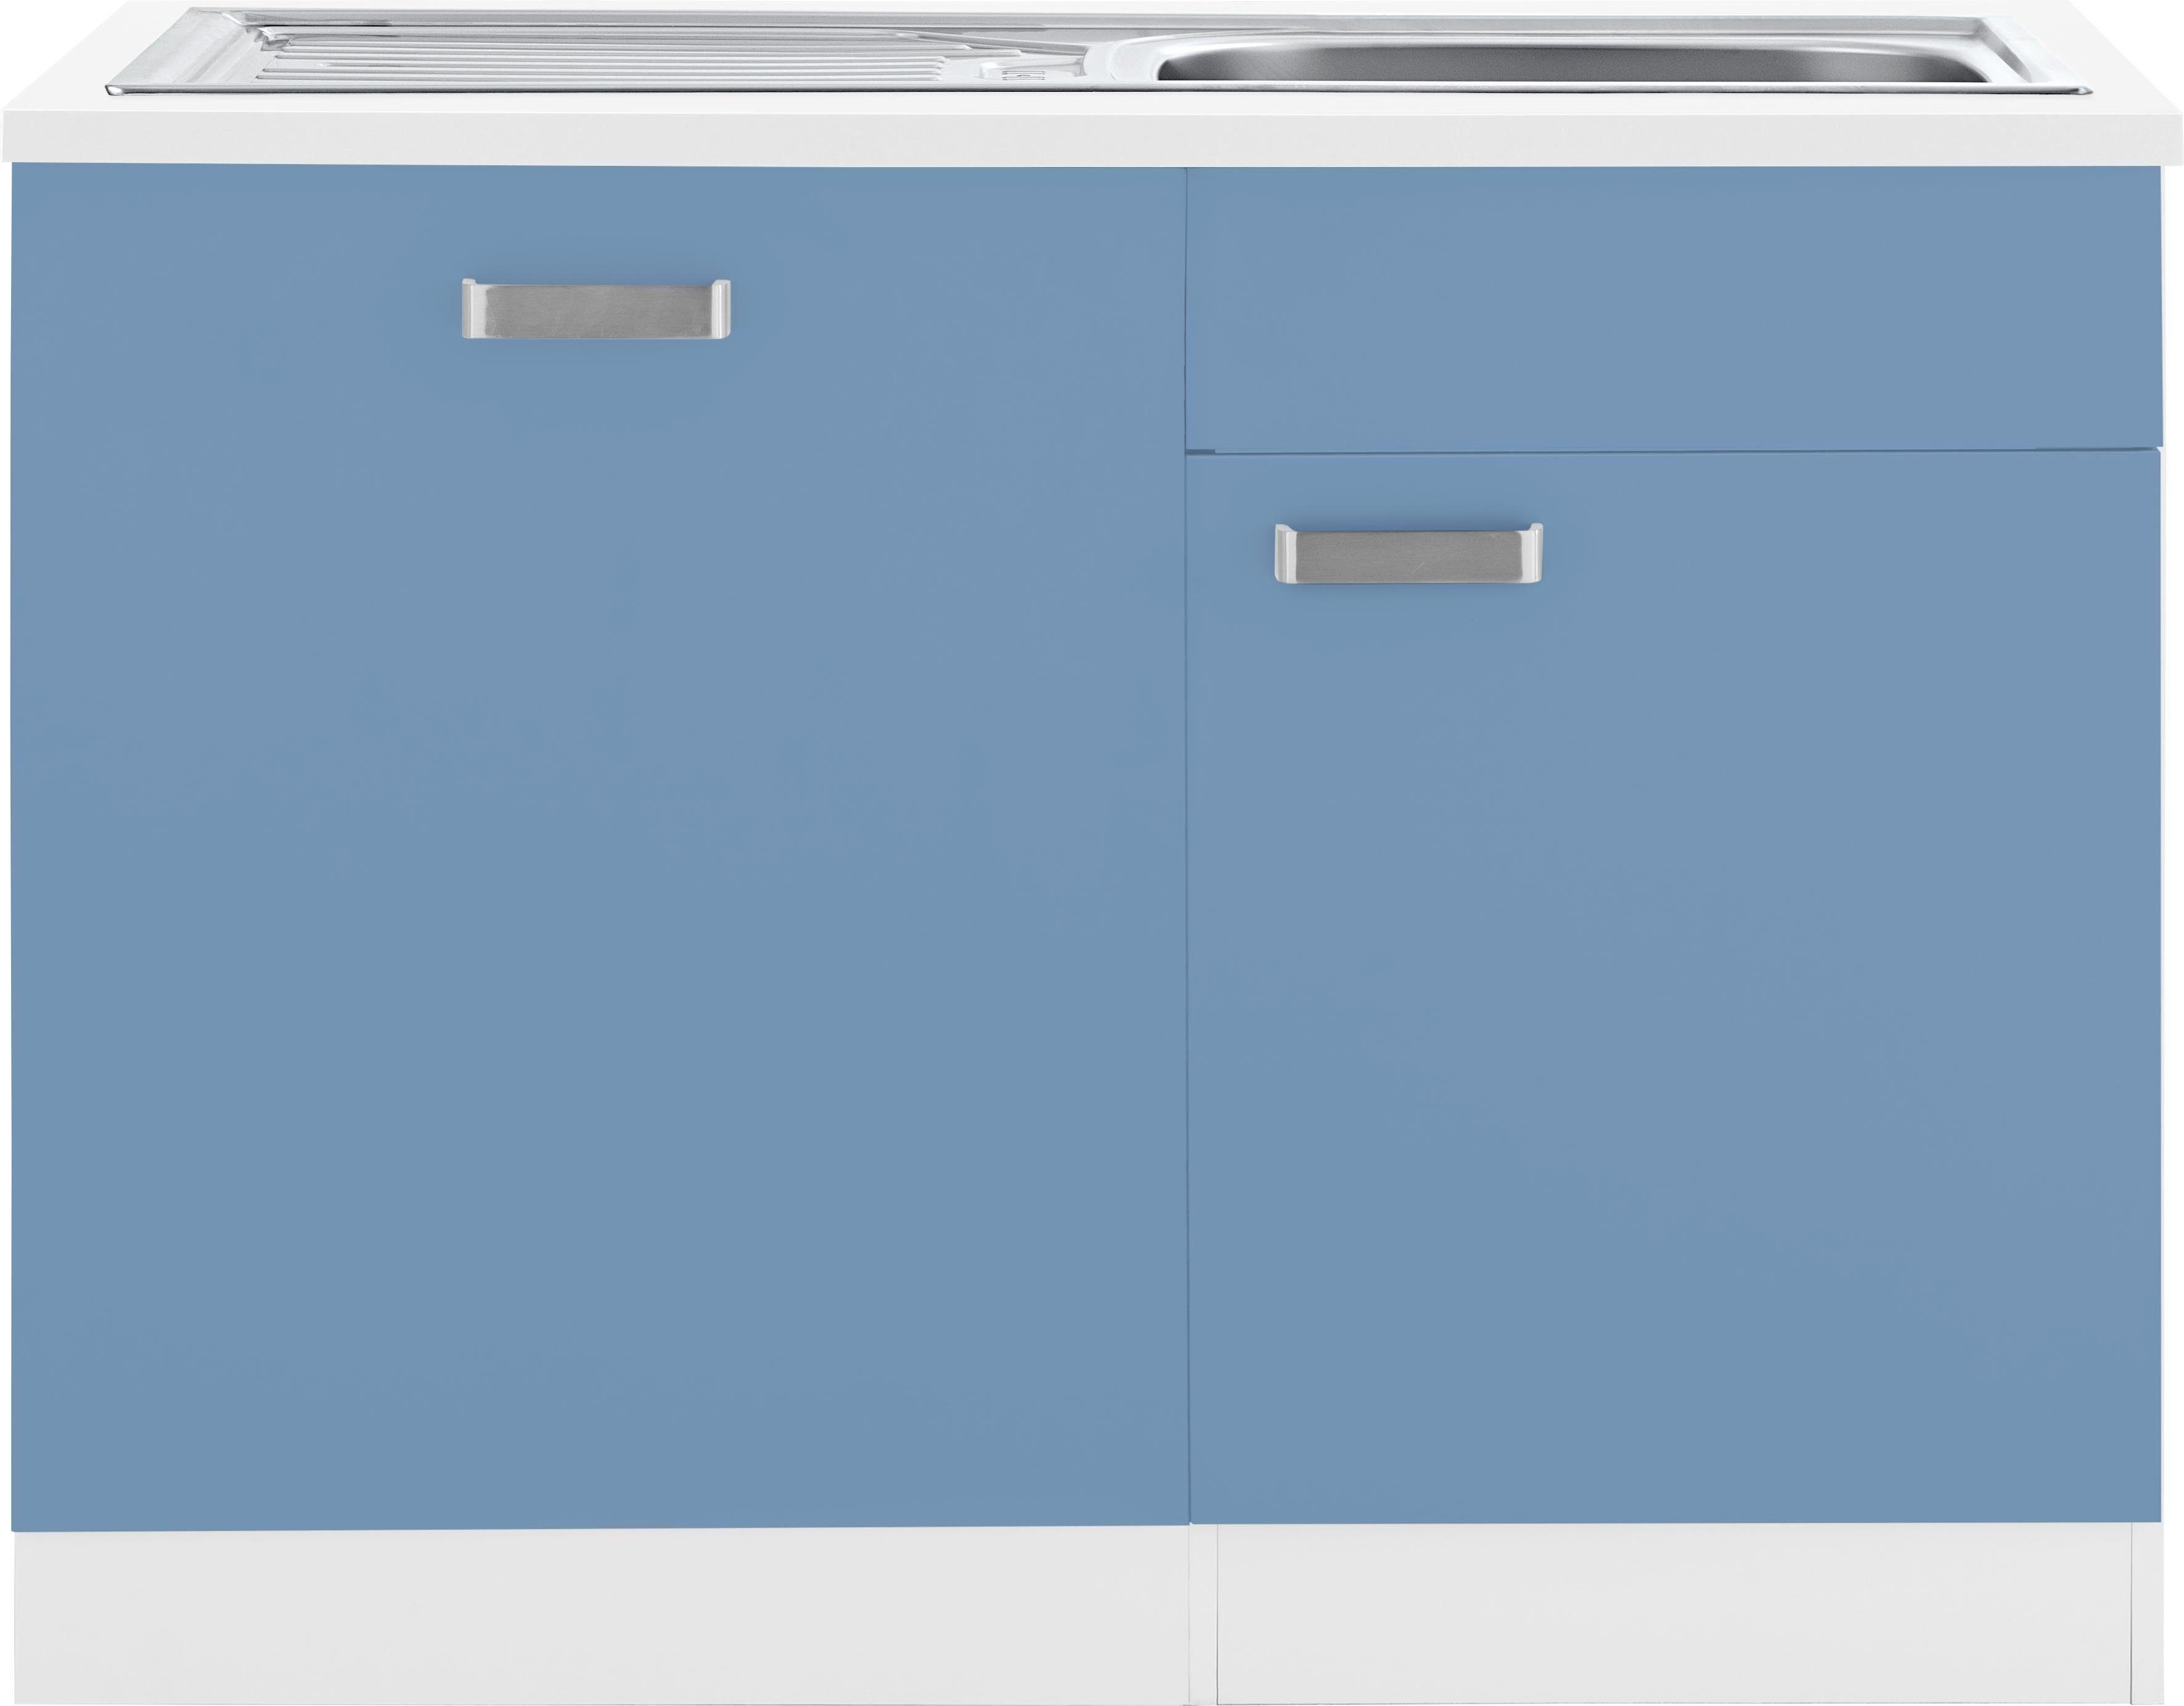 wiho Küchen Spülenschrank Husum 110 cm breit, inkl. Tür/Sockel für Geschirrspüler